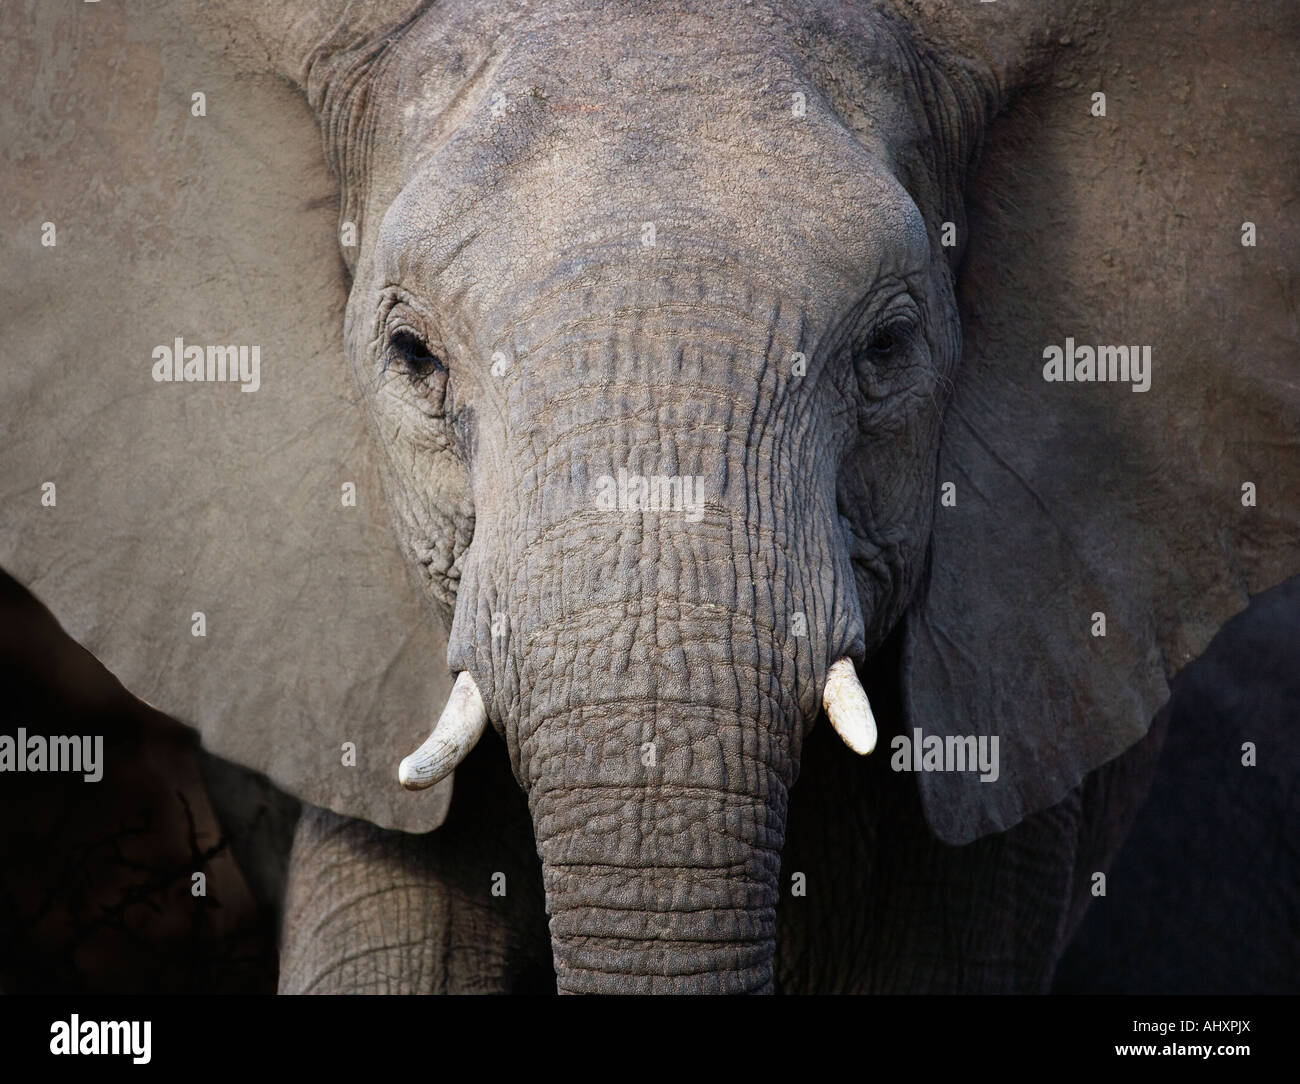 Close up of elephant Stock Photo